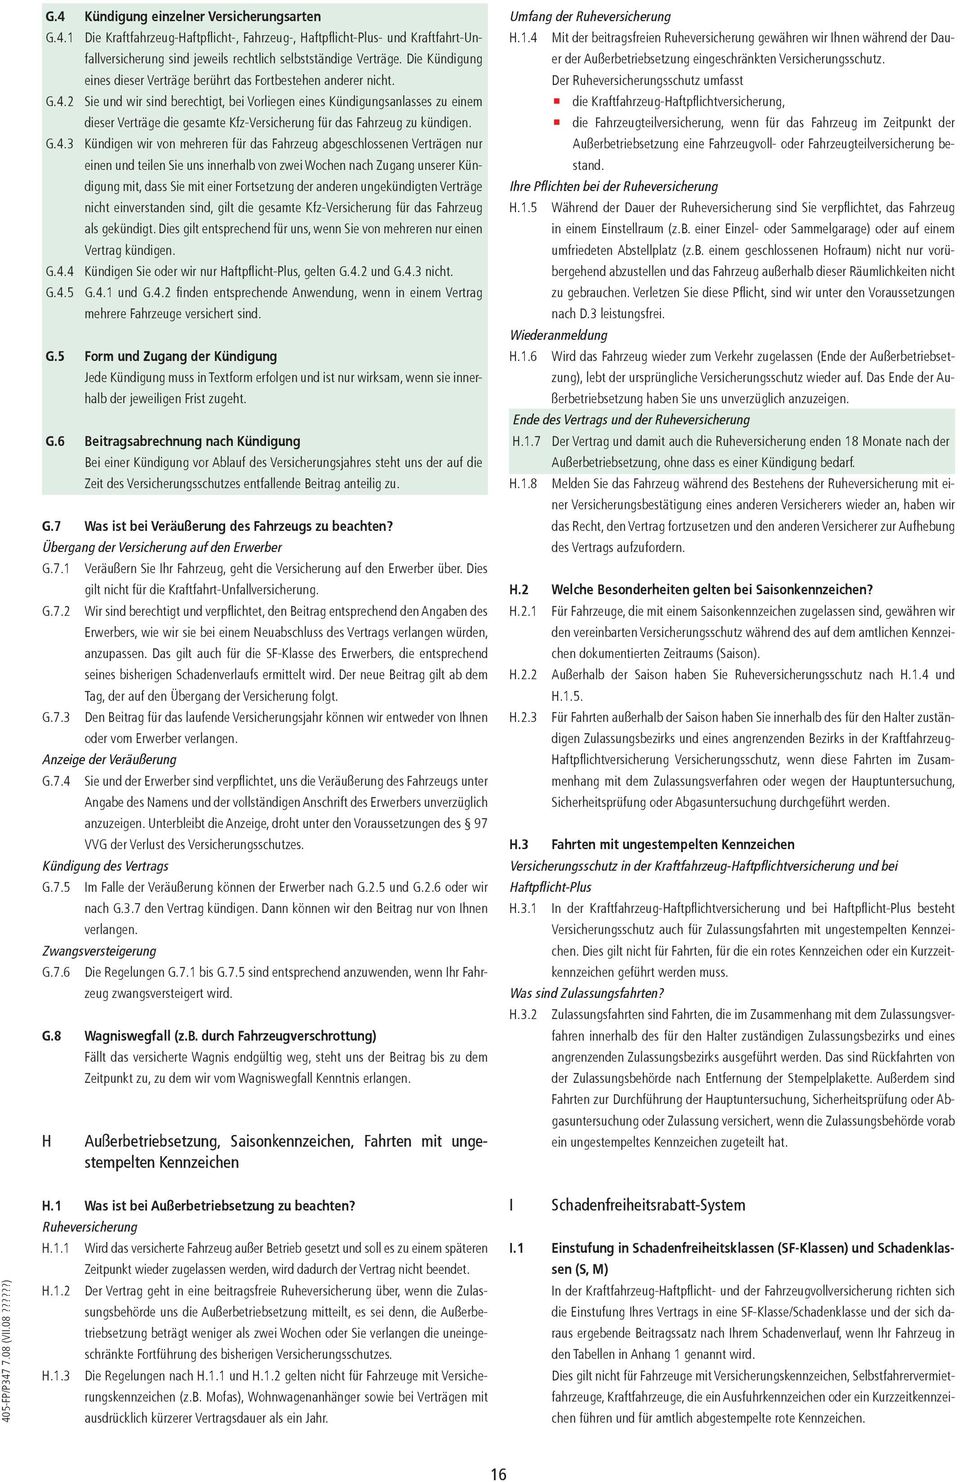 Allgemeine Bedingungen Für Die Kfz Versicherung Der Hdi Gerling